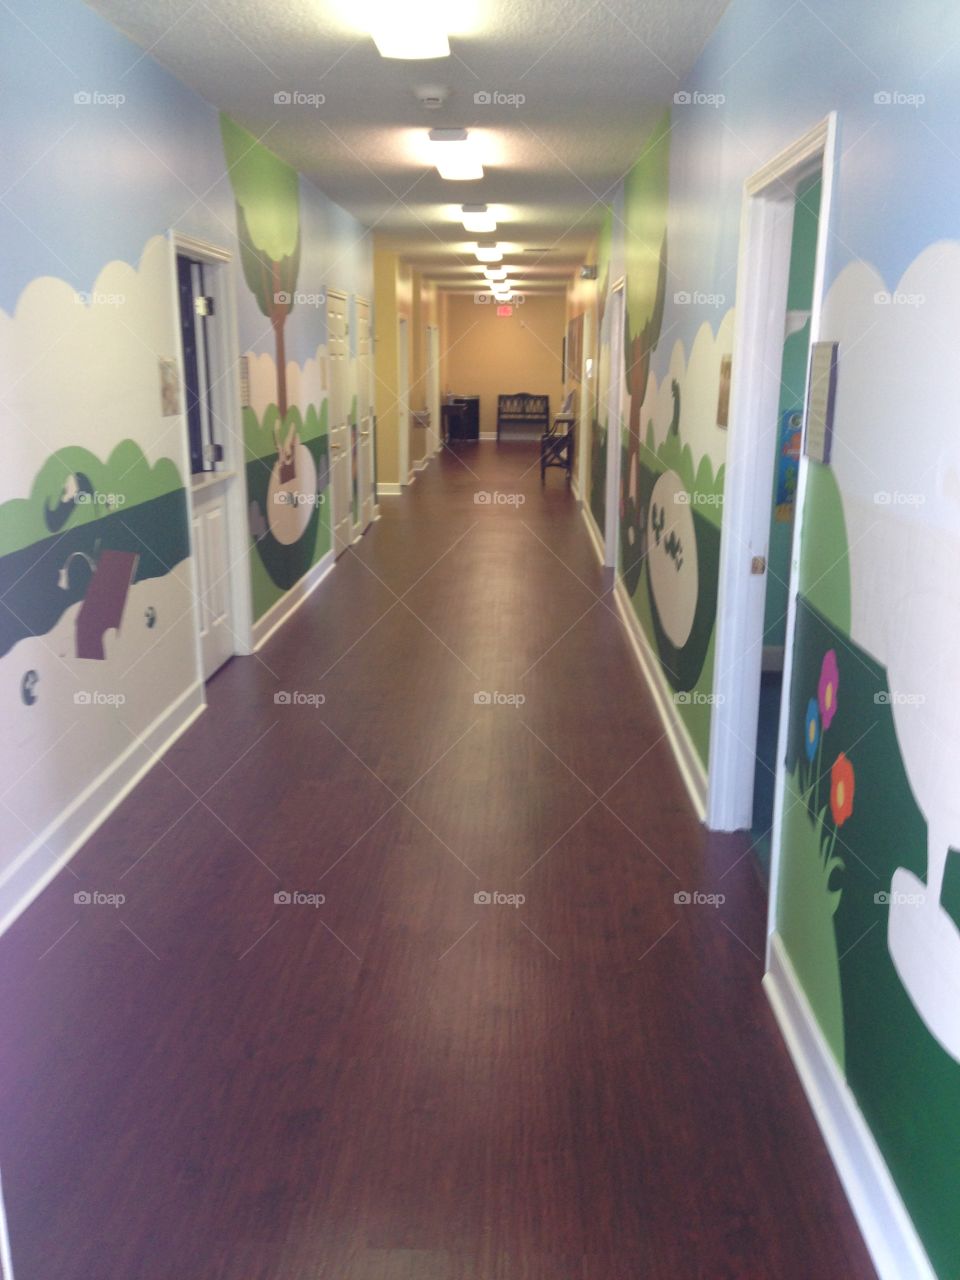 Children's painted hallway